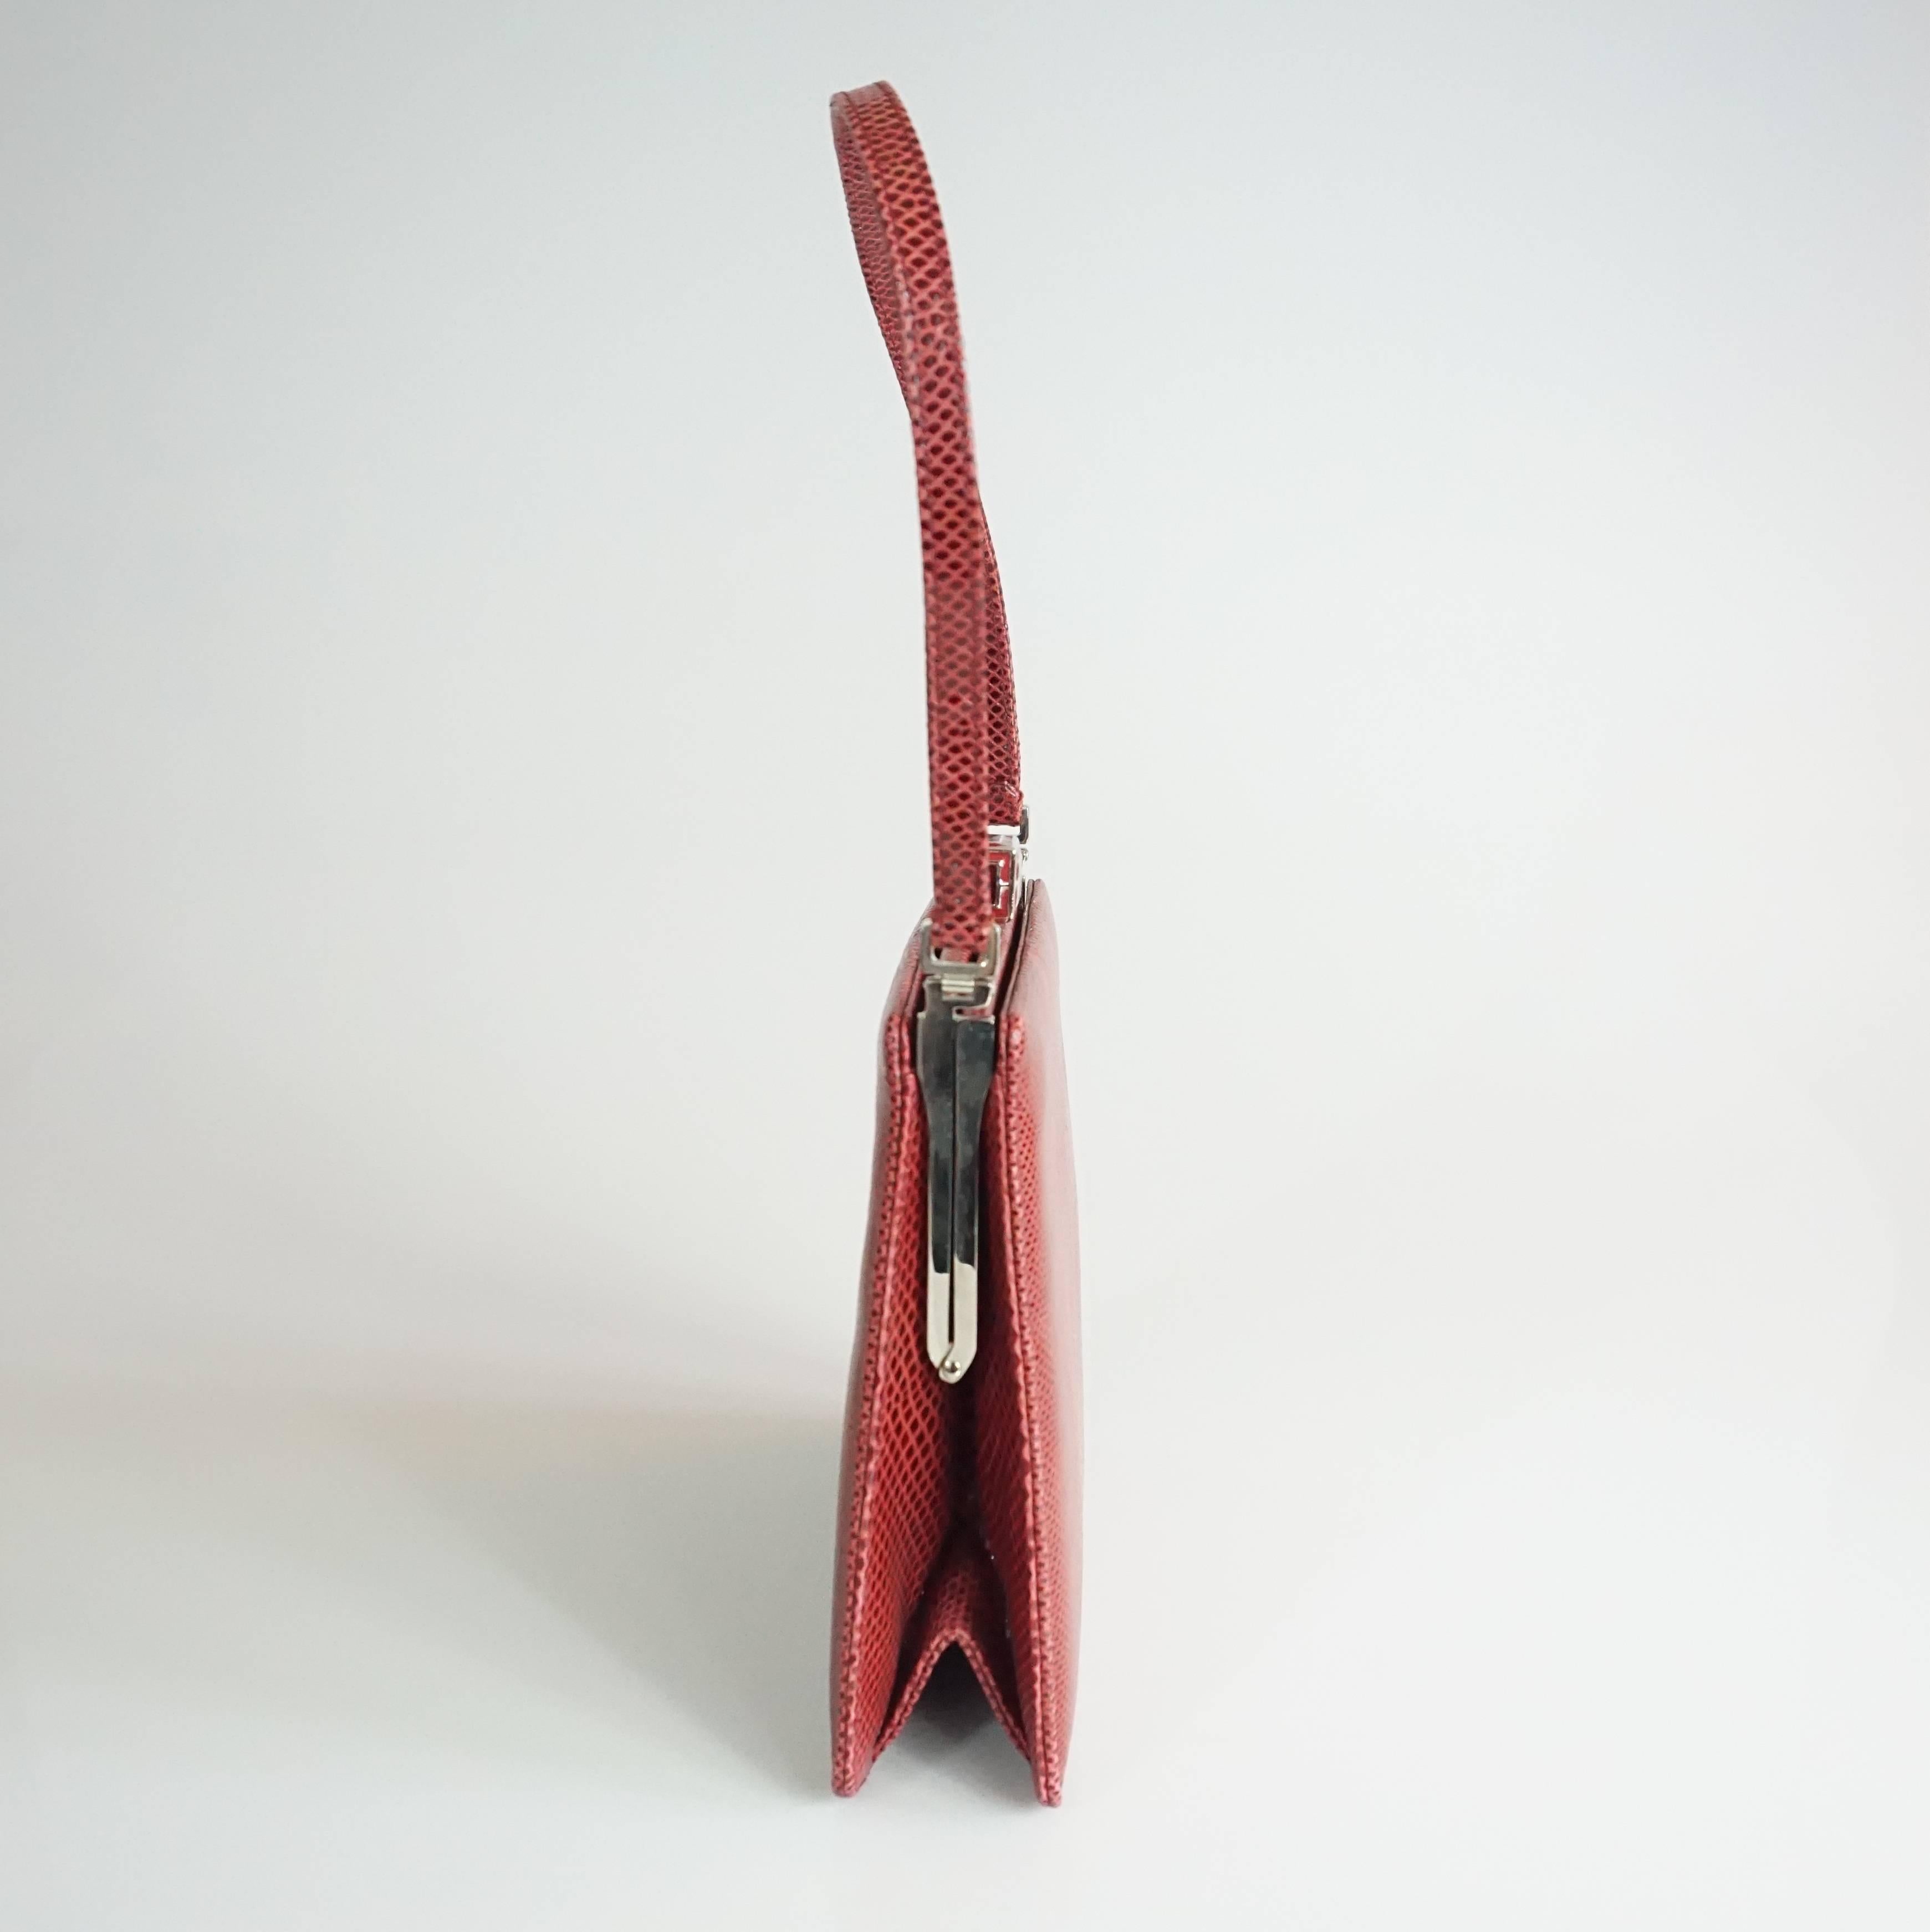 Judith Leiber Deep Red Lizard Top Handle Handtasche - SHW Circa 90's Diese schöne strukturierte Handtasche in einem schönen tiefroten Eidechse Farbe, ist in sehr gutem Zustand. Sie hat eine Art-Deco-Emaille, einen kurzen Tragegurt, ein Hauptfach mit